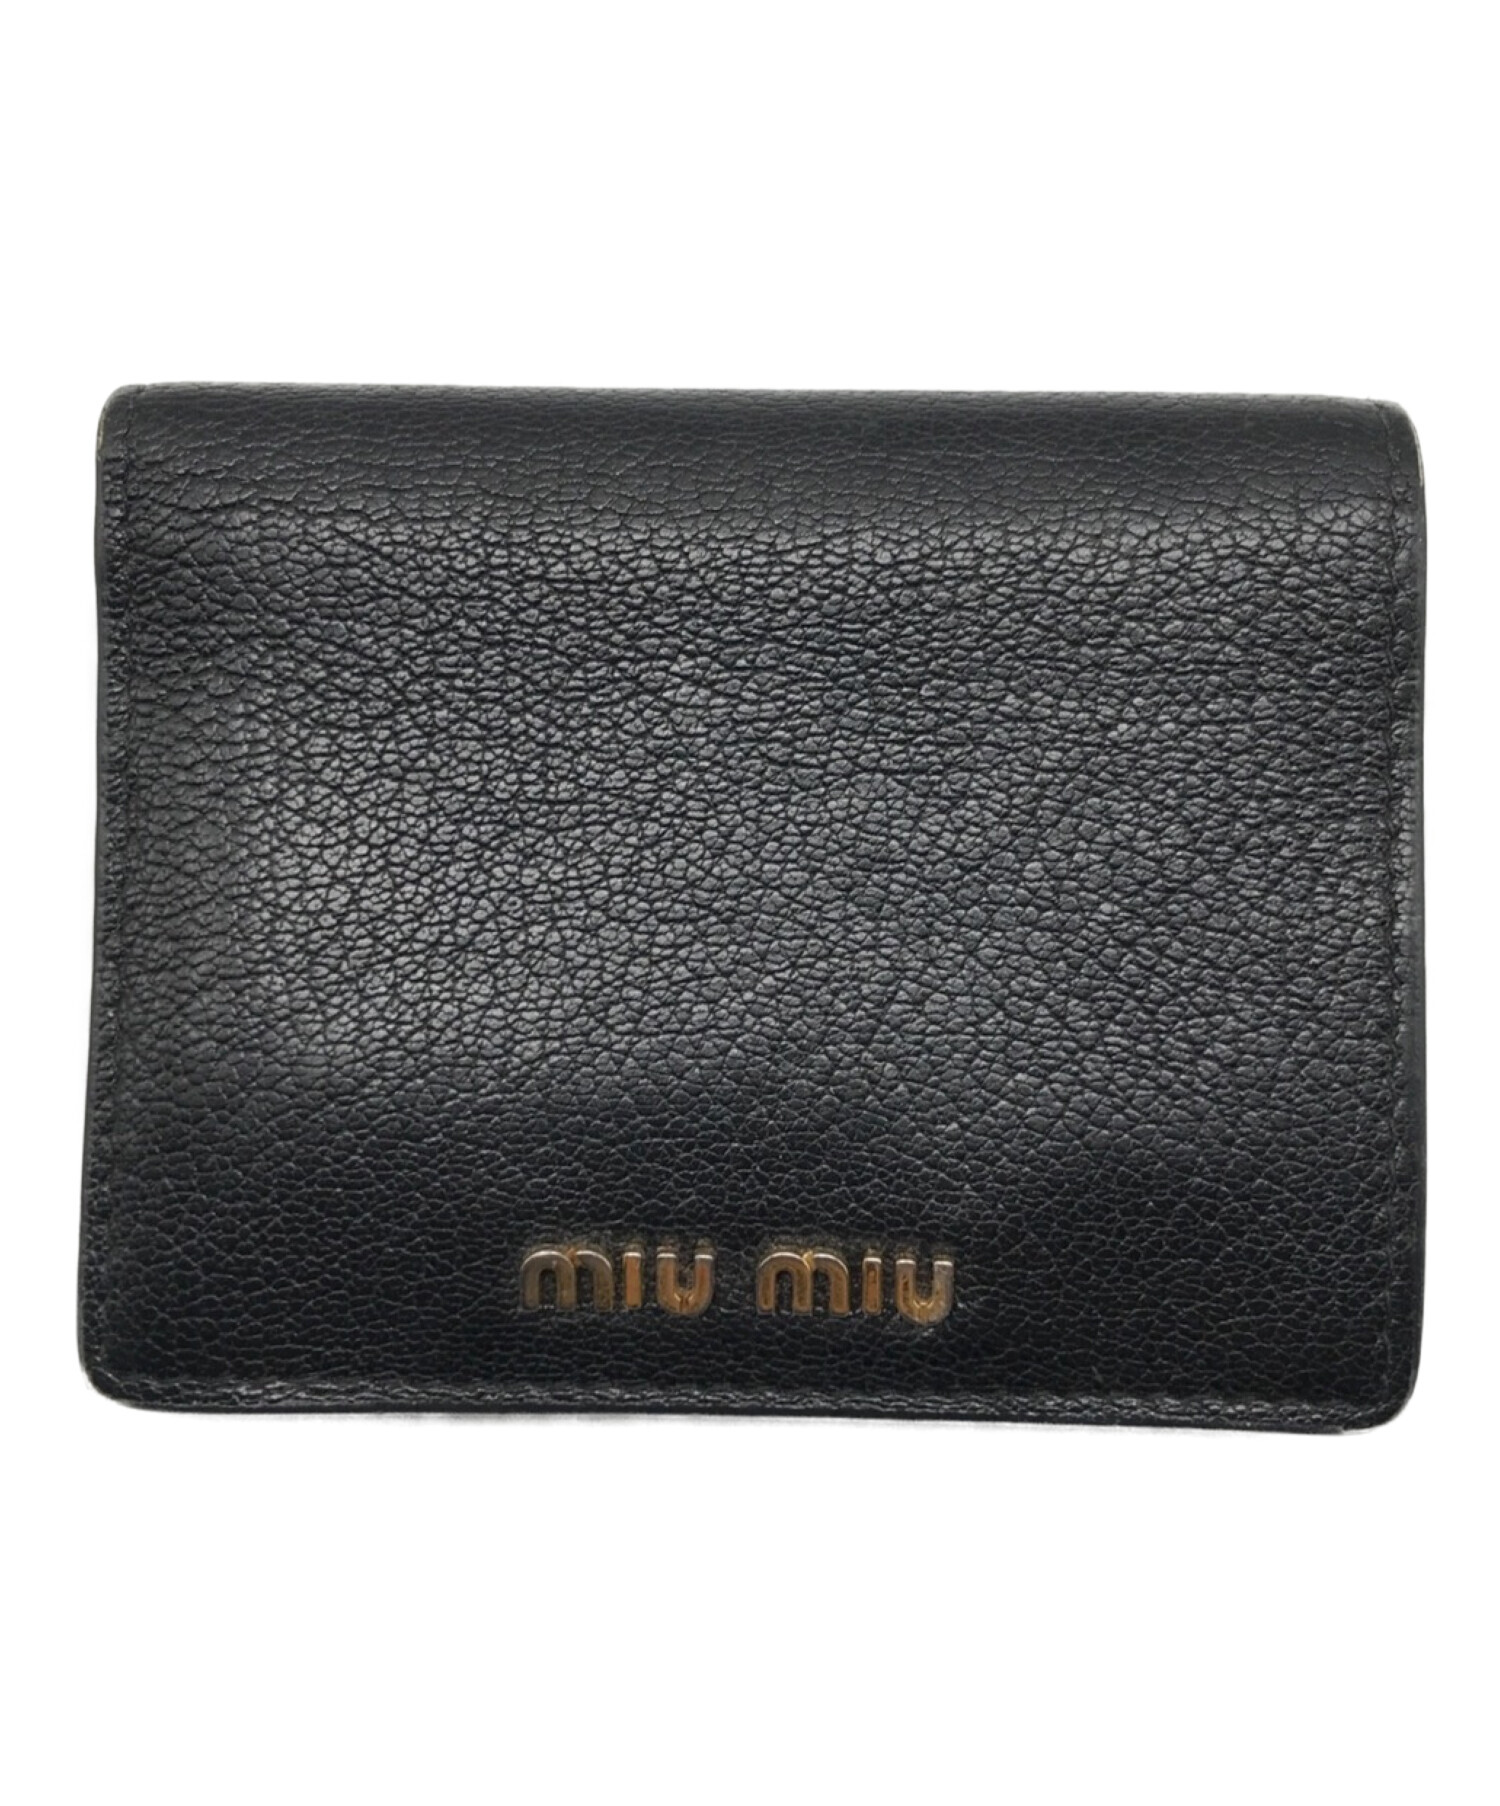 MIU MIU (ミュウミュウ) 2つ折り財布 ブラック